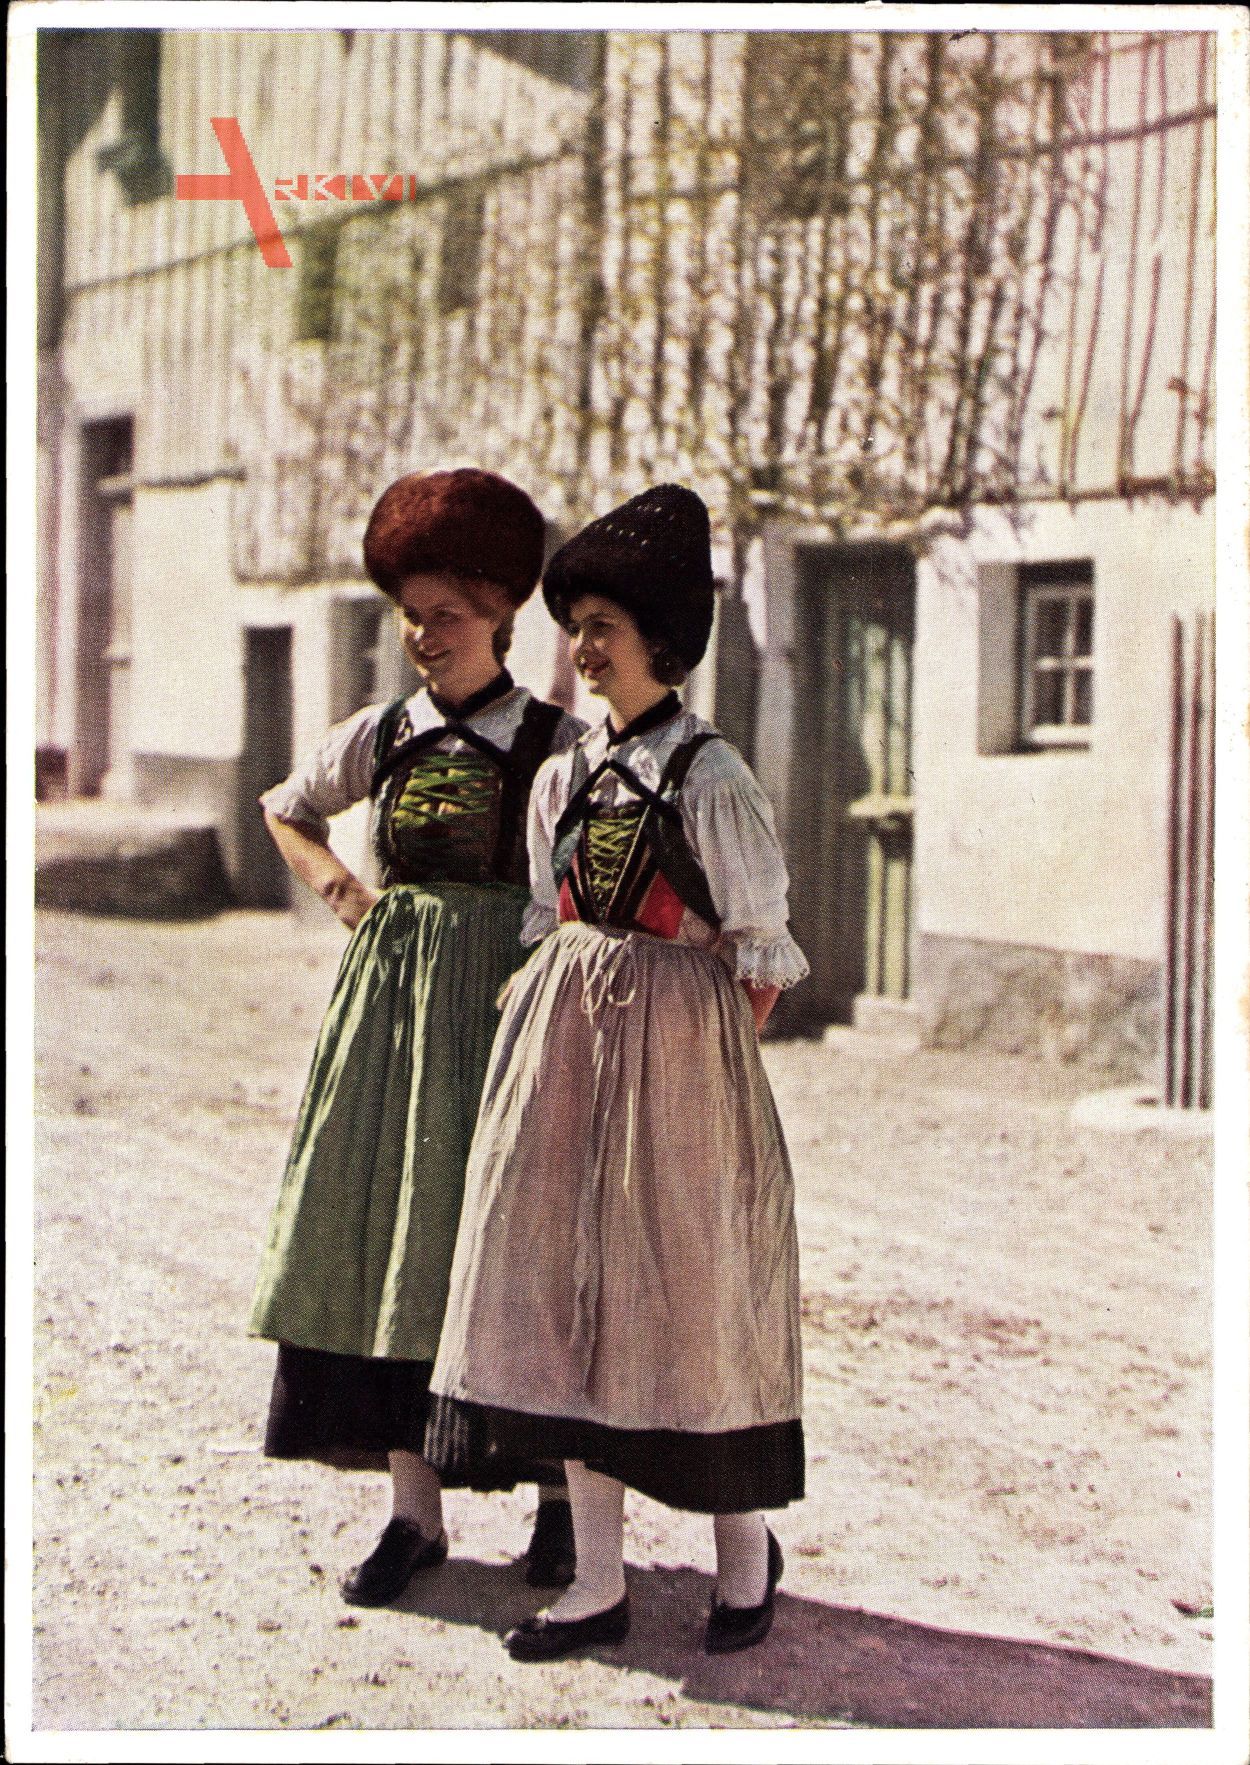 Tiroler Landestrachten aus dem Pitztal, Zwei Frauen, Hüte, Röcke